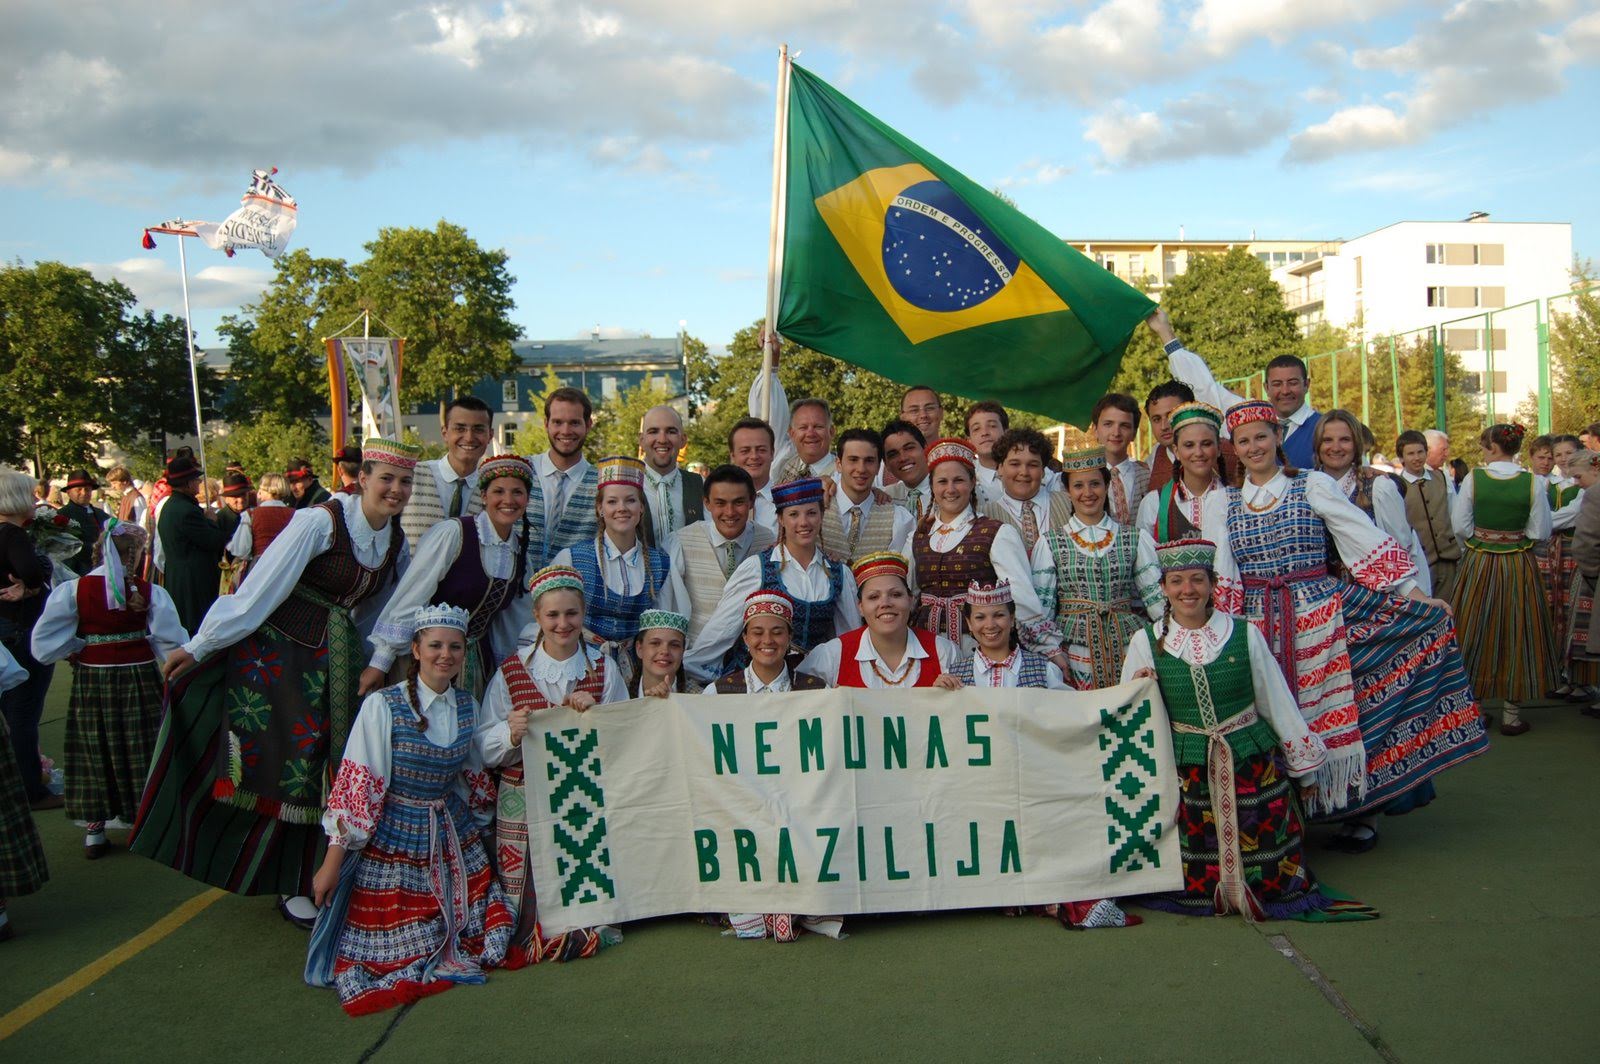 Brazilijoje gimusi ir augusi Andrėja de Alenkar nešioja lietuvišką pavardę Kasteckas. Būtent ši pavardė pasakoja jautrią Andrėjos šeimos istoriją, kuri amžiams įrėžė Lietuvos vardą į moters širdį.